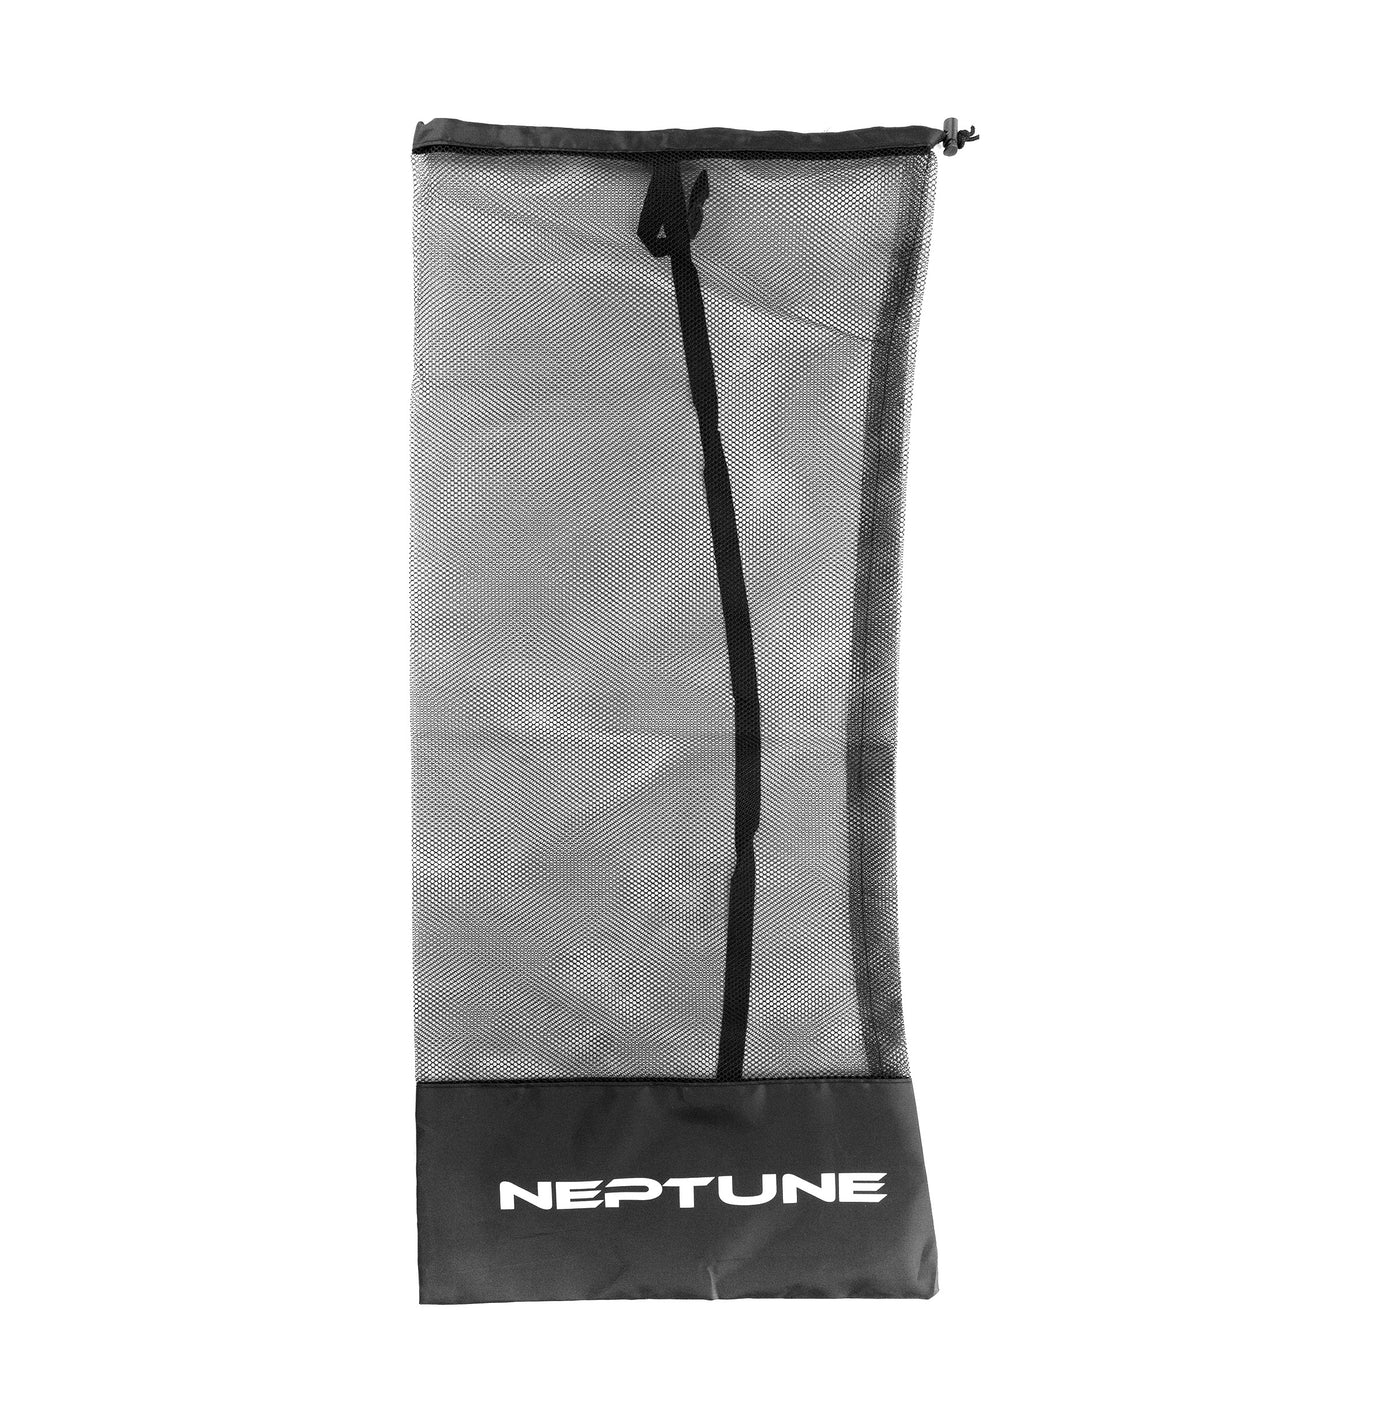 Neptune Mesh Snorkel Bag Set